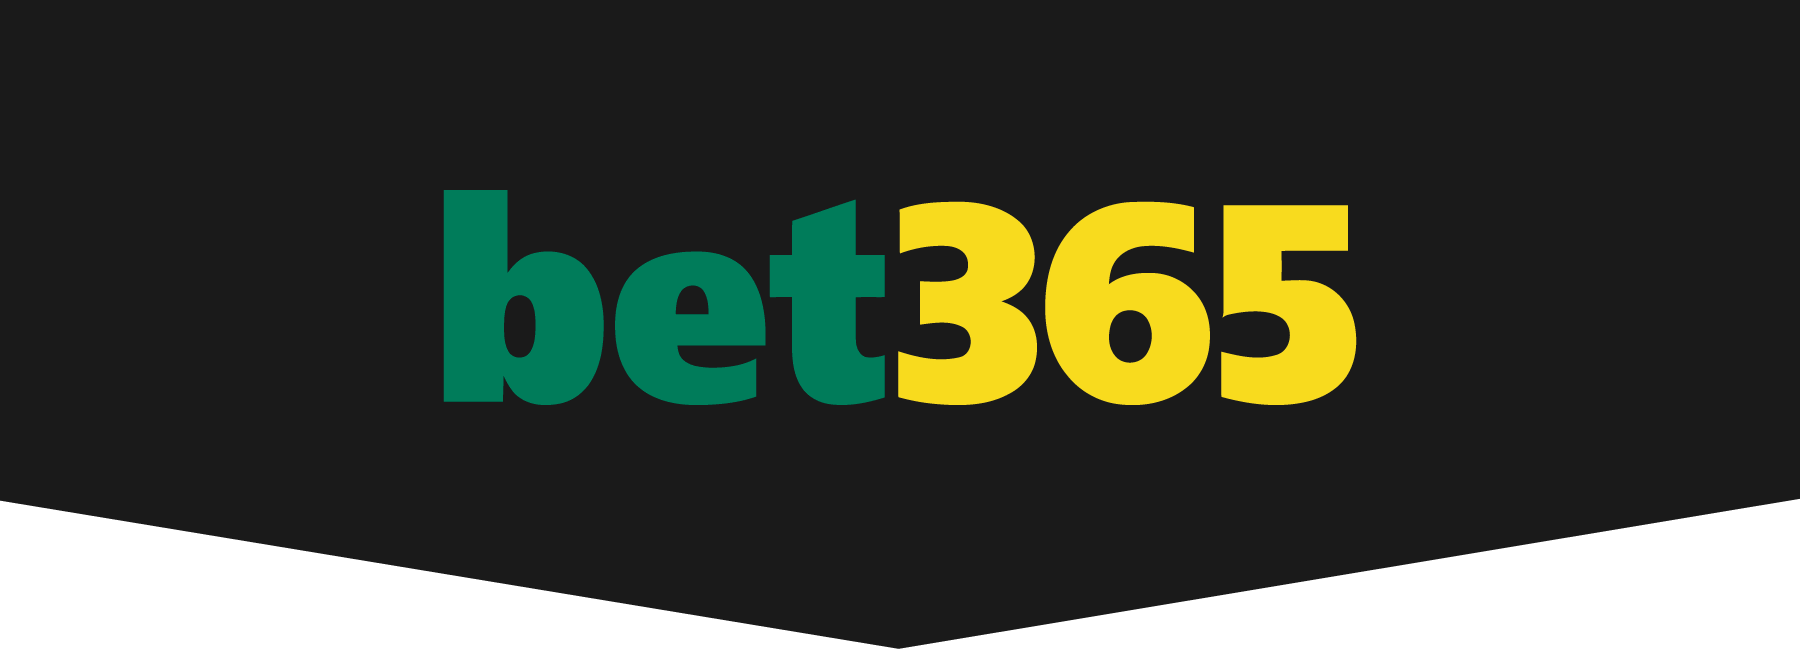 Aplikasi bet365 baru untuk permainan kasino tersedia di Belanda